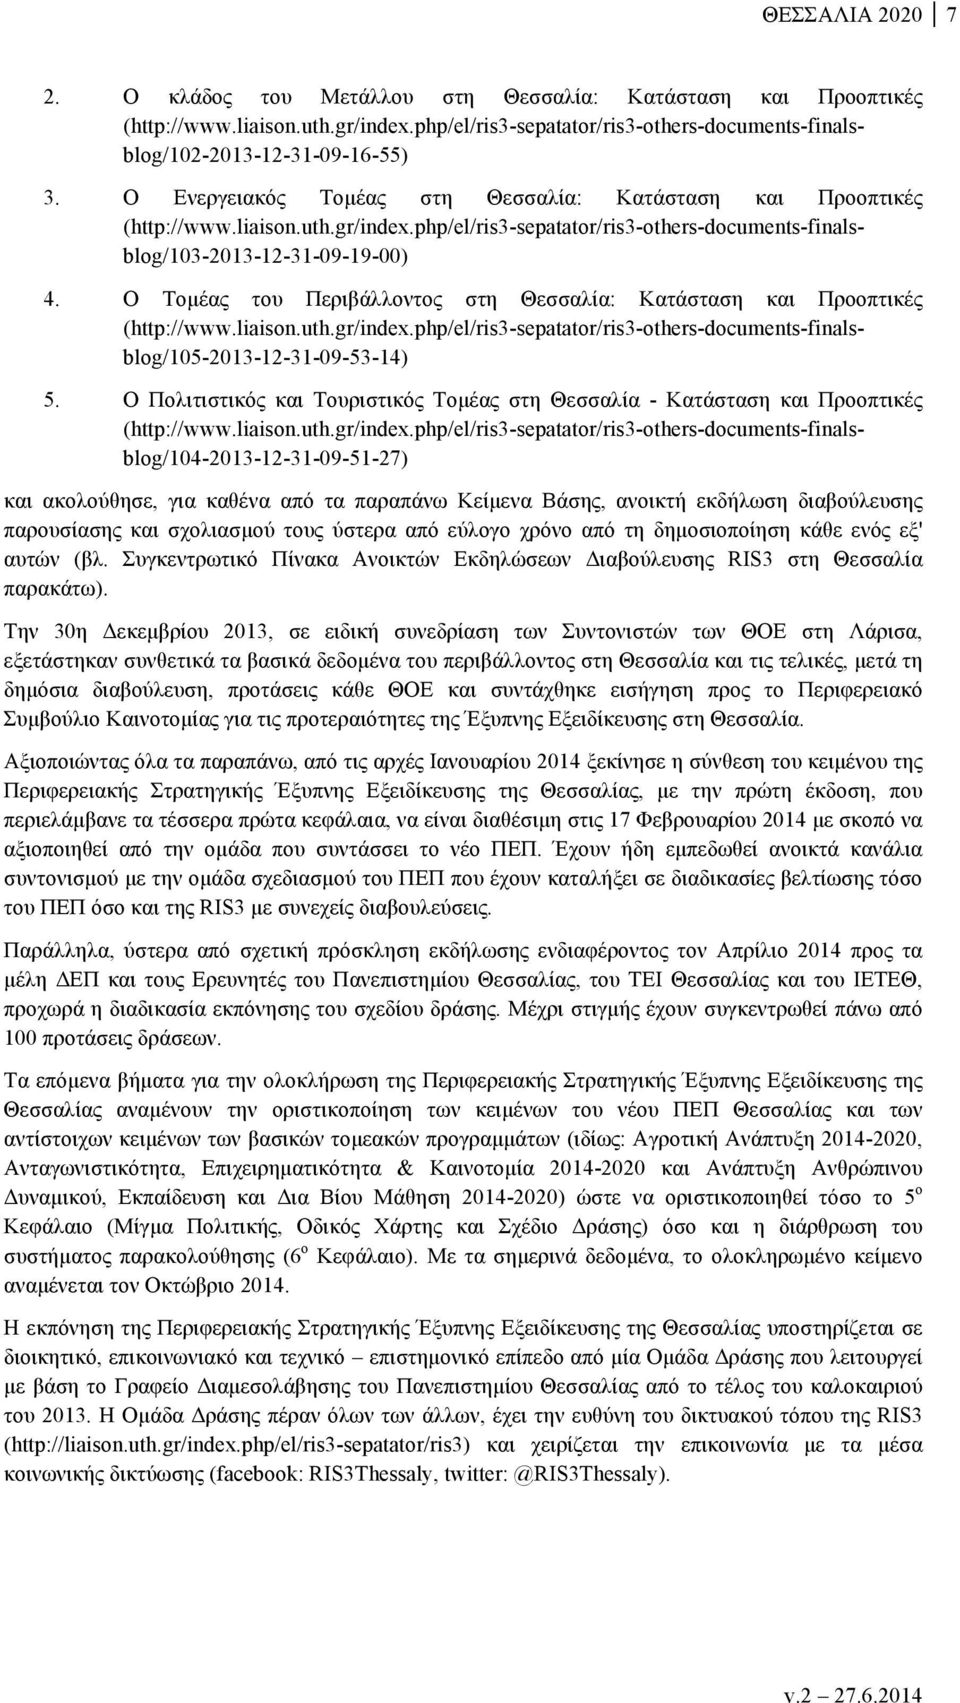 Ο Τοµέας του Περιβάλλοντος στη Θεσσαλία: Κατάσταση και Προοπτικές (http://www.liaison.uth.gr/index.php/el/ris3-sepatator/ris3-others-documents-finalsblog/105-2013-12-31-09-53-14) 5.